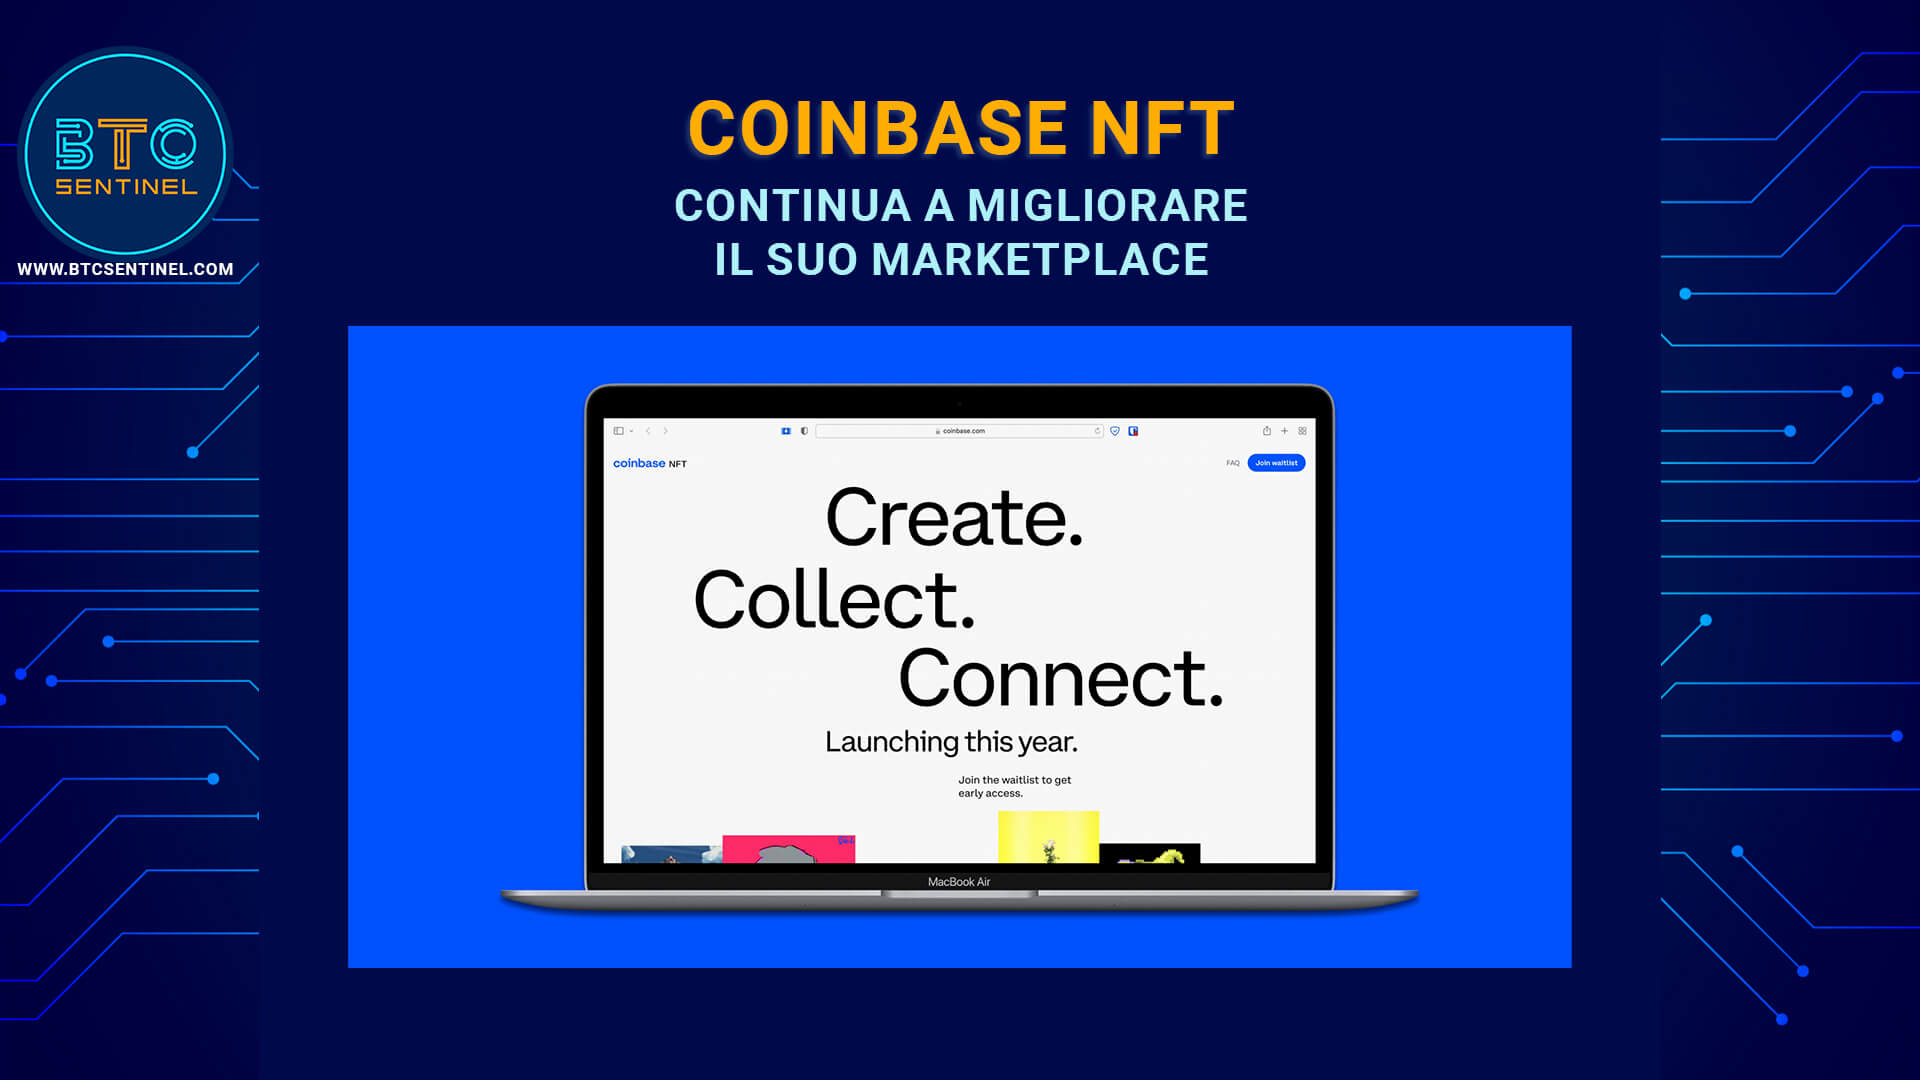 Coinbase NFT rilascia nuove funzionalità per attirare trader da altri markets